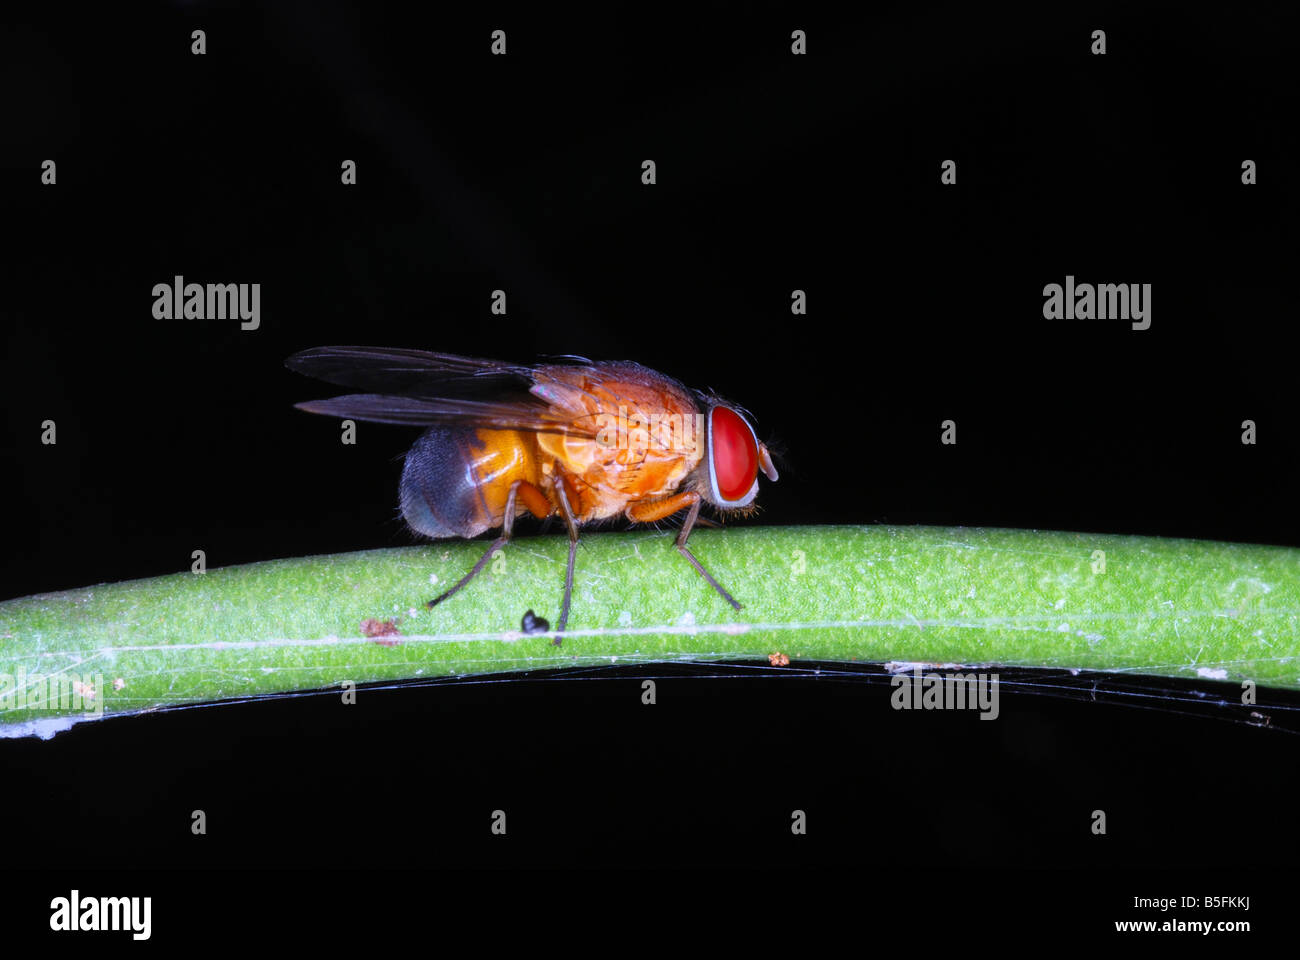 Einige fliegen. eines der zahlreichen Arten von fliegen, die im Wald von Arunachal Pradesh entdeckt werden können. Indien Stockfoto